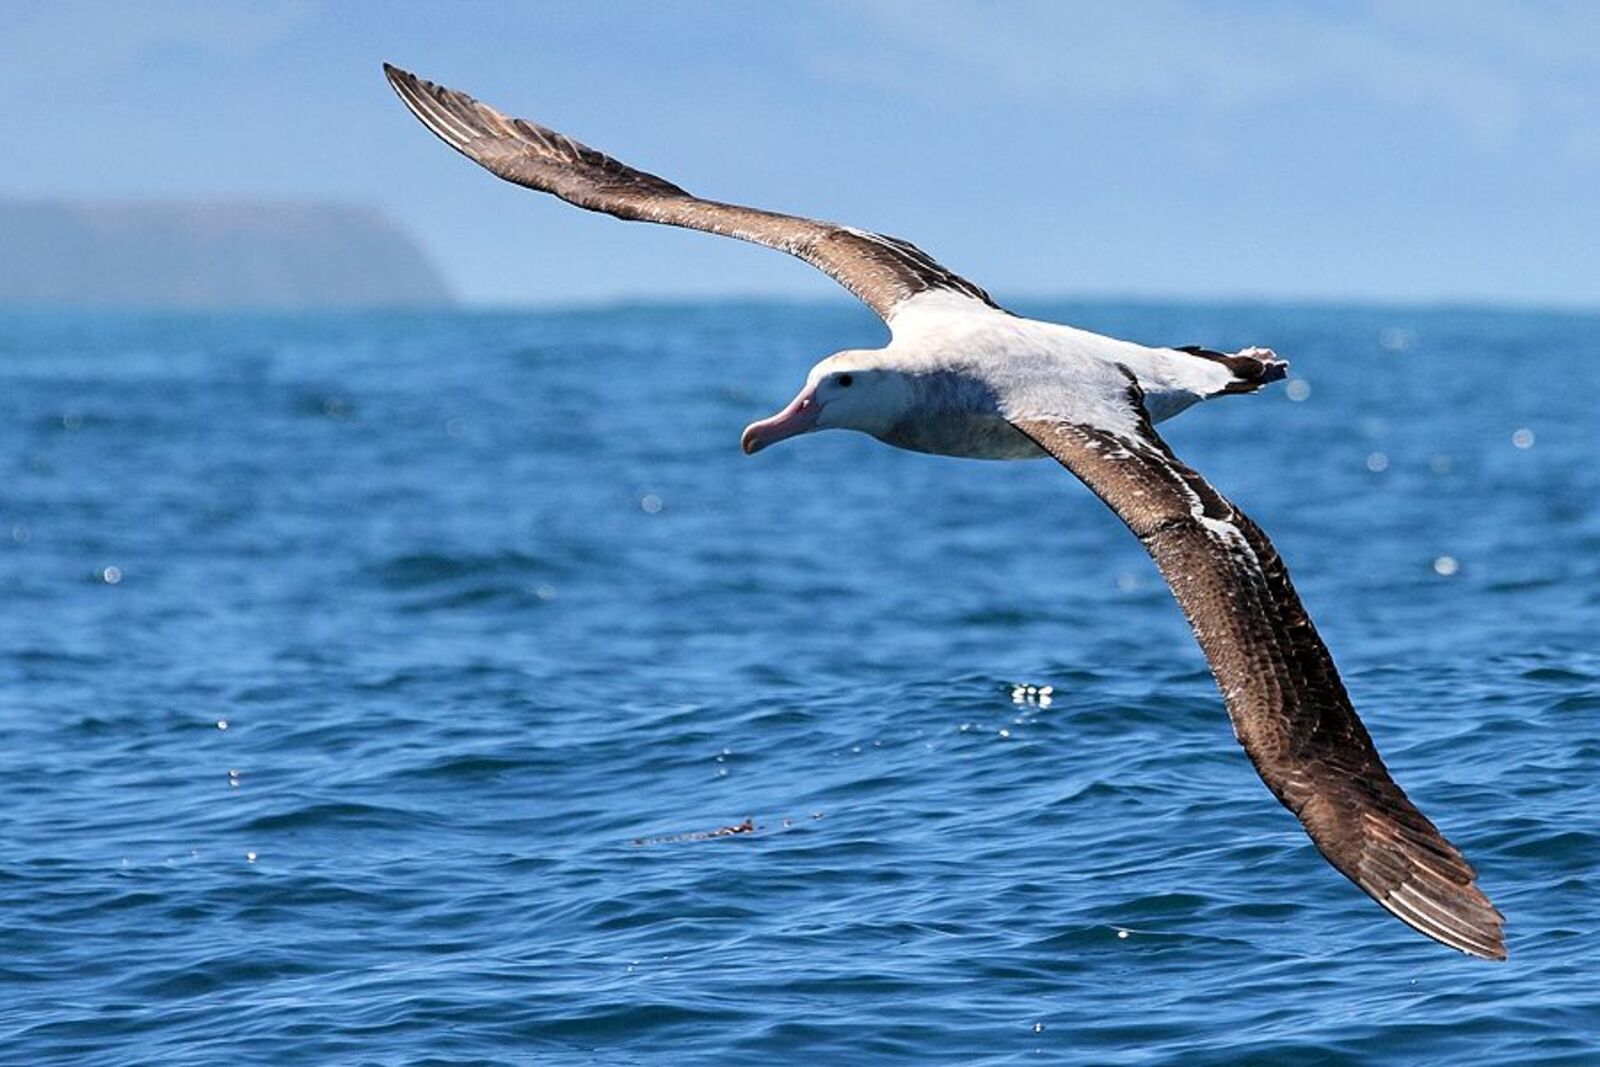 Сәйәхәтсе альбатрос – һыуҙа йөҙөүсе иң ҙур ҡош